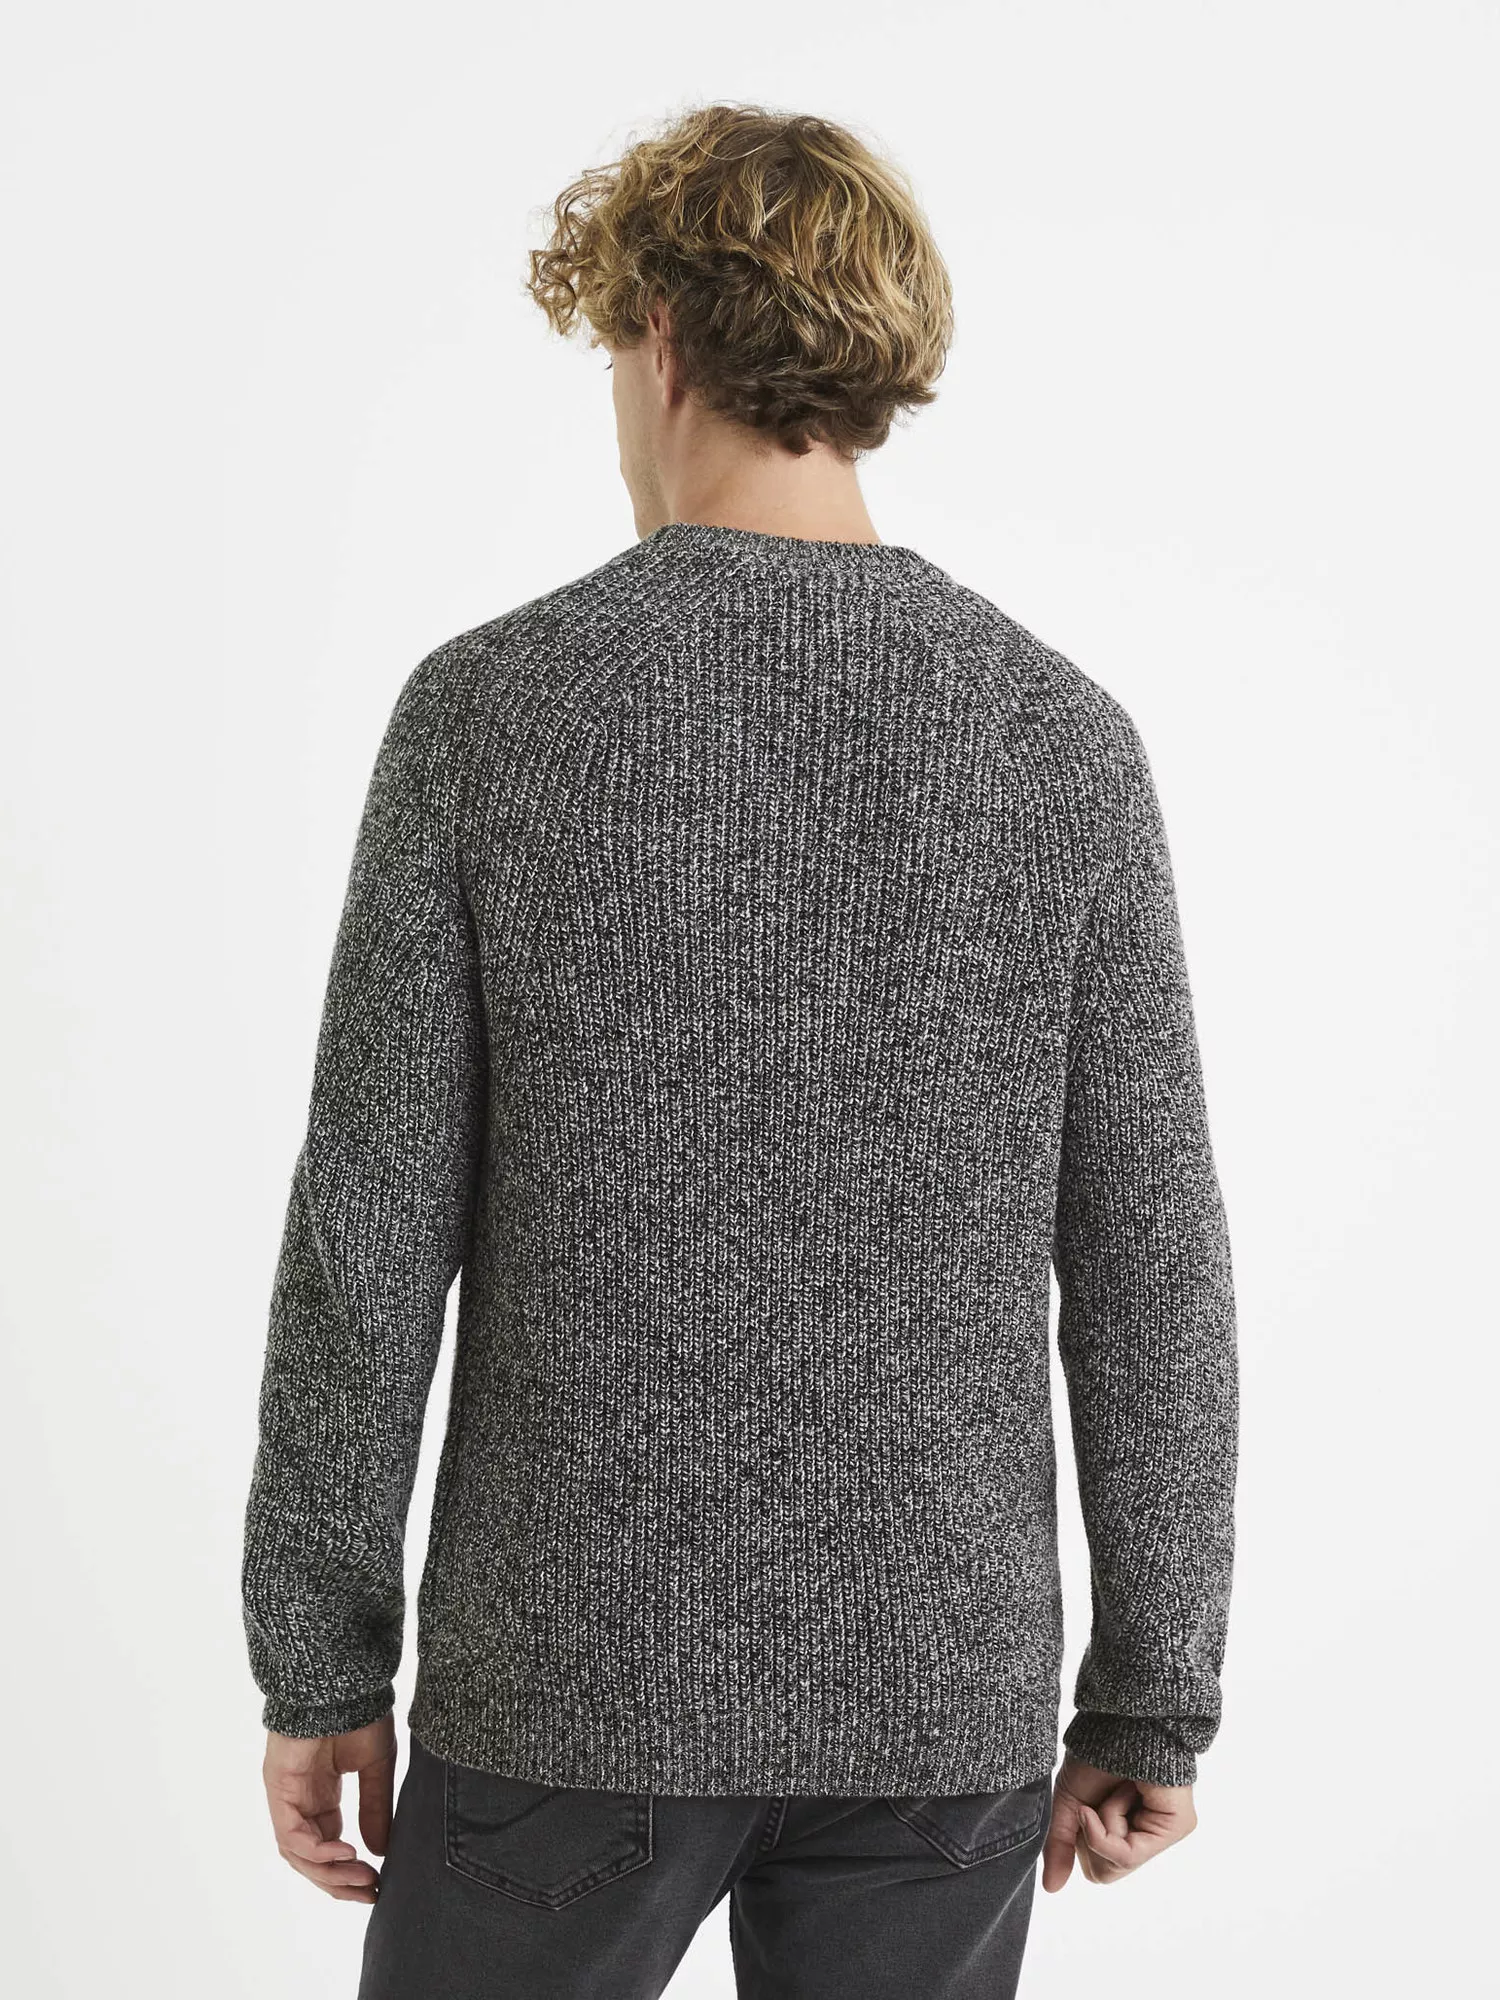 Pletený svetr Vemral melír (2)